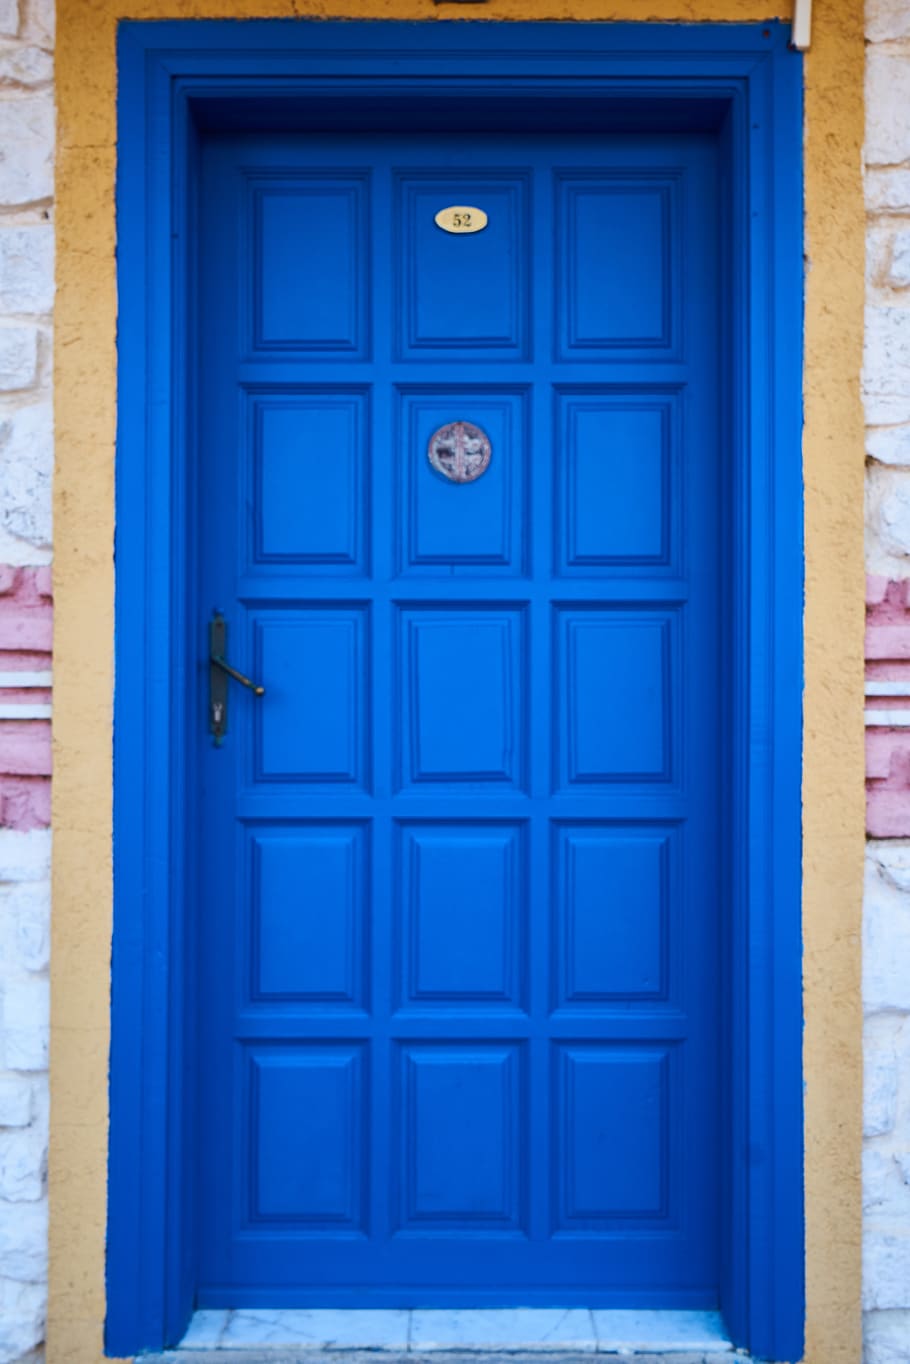 biru, kayu, pintu, bangunan, indah, Mediterania, tekstur, pola, latar belakang, jalan masuk